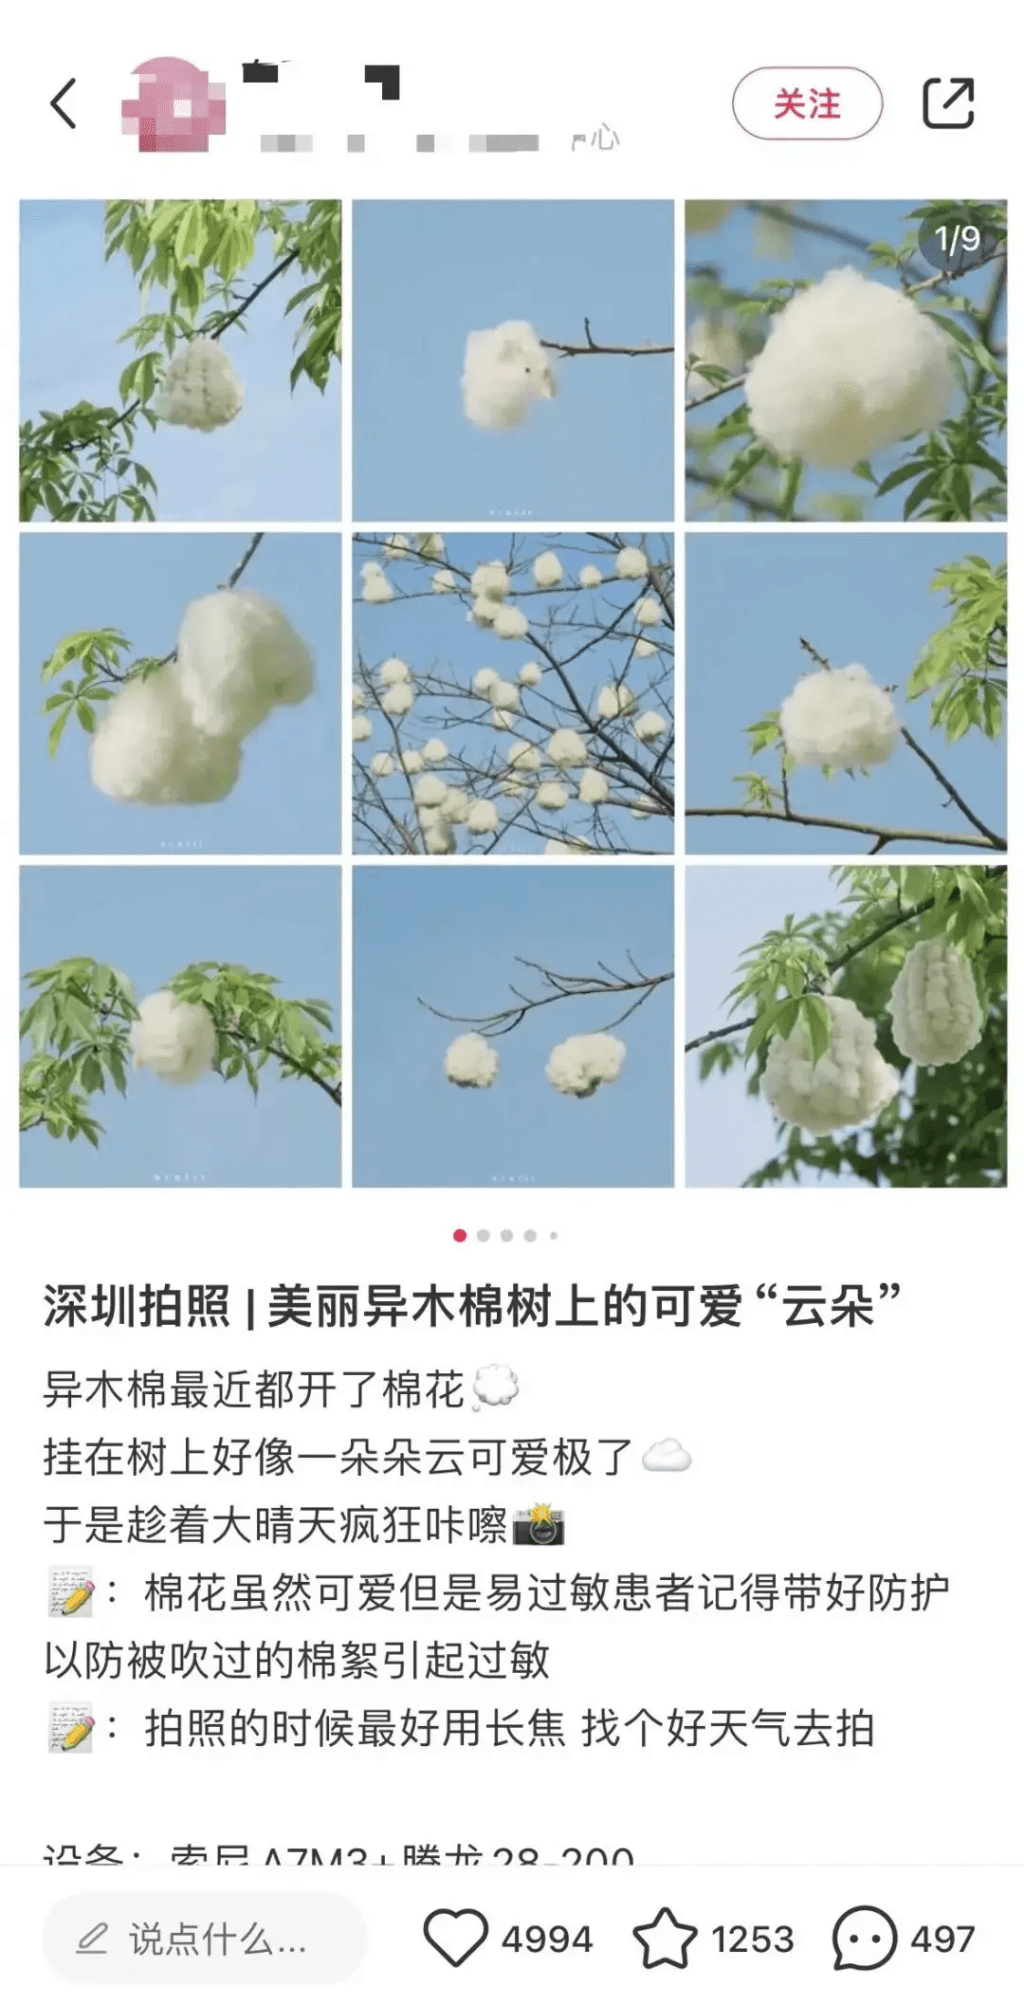 網民形容木棉果實有如一朵朵雲。